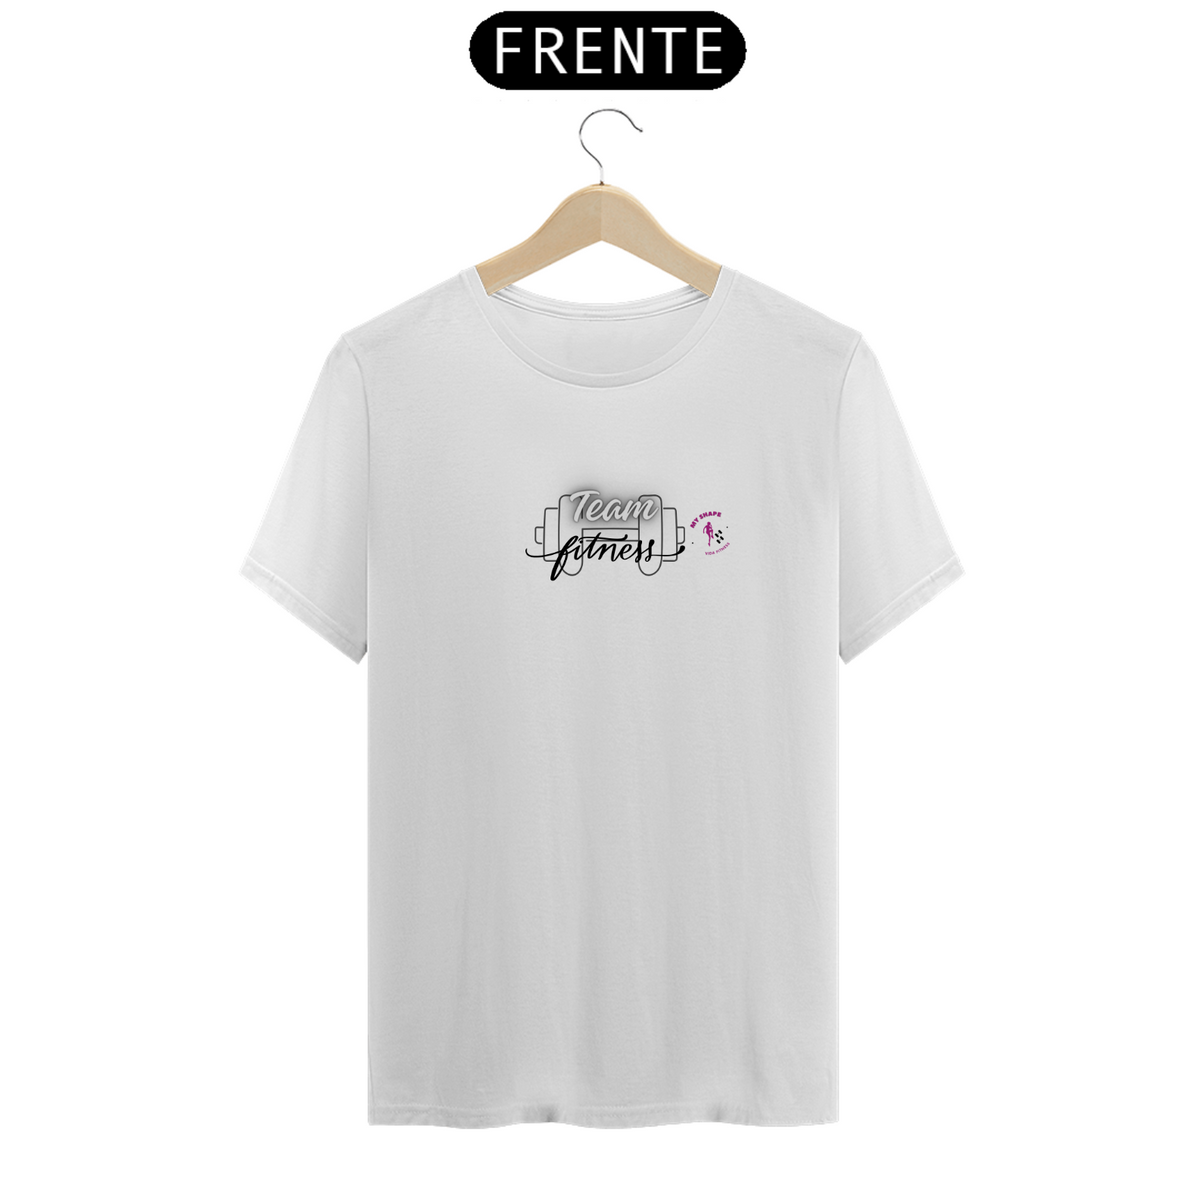 Nome do produto: T-shirt Algodão feminina Team Fitness branca, rosa e cinza